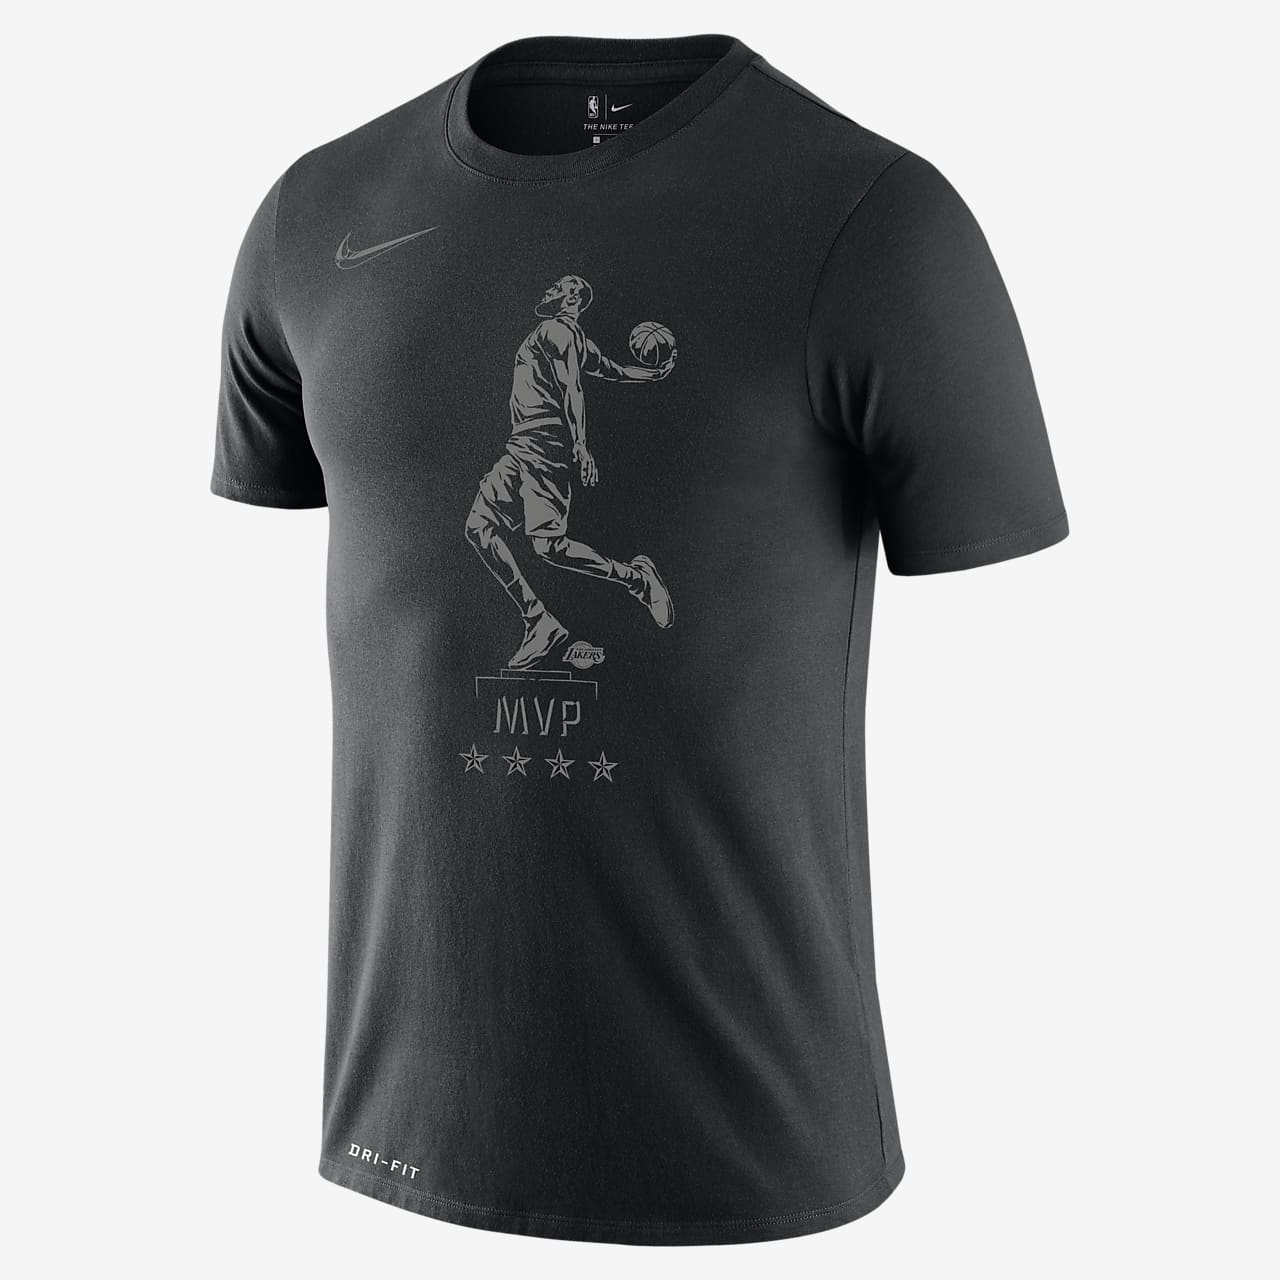 (LeBron James) Nike Dri-FIT "MVP" 男子 NBA T恤